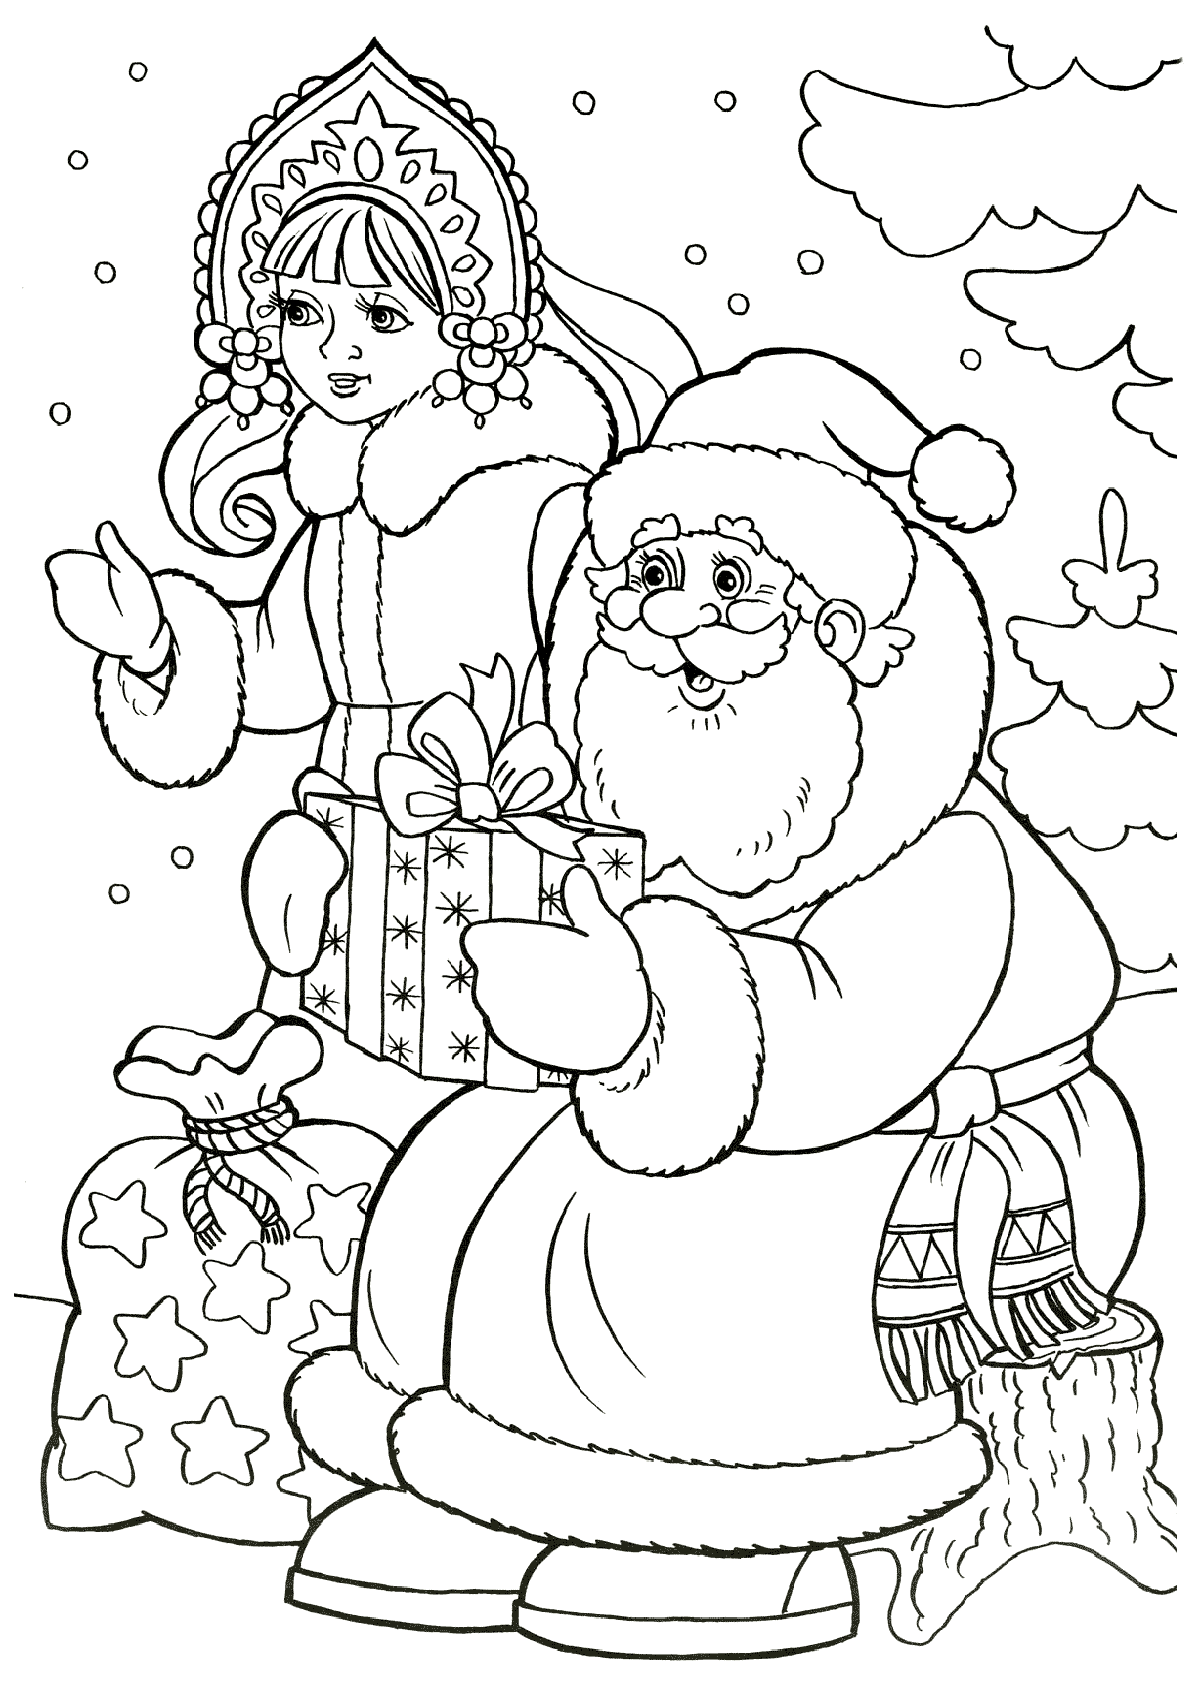 Нарисованные Дед Мороз и Снегурочка на Новый год 2018.